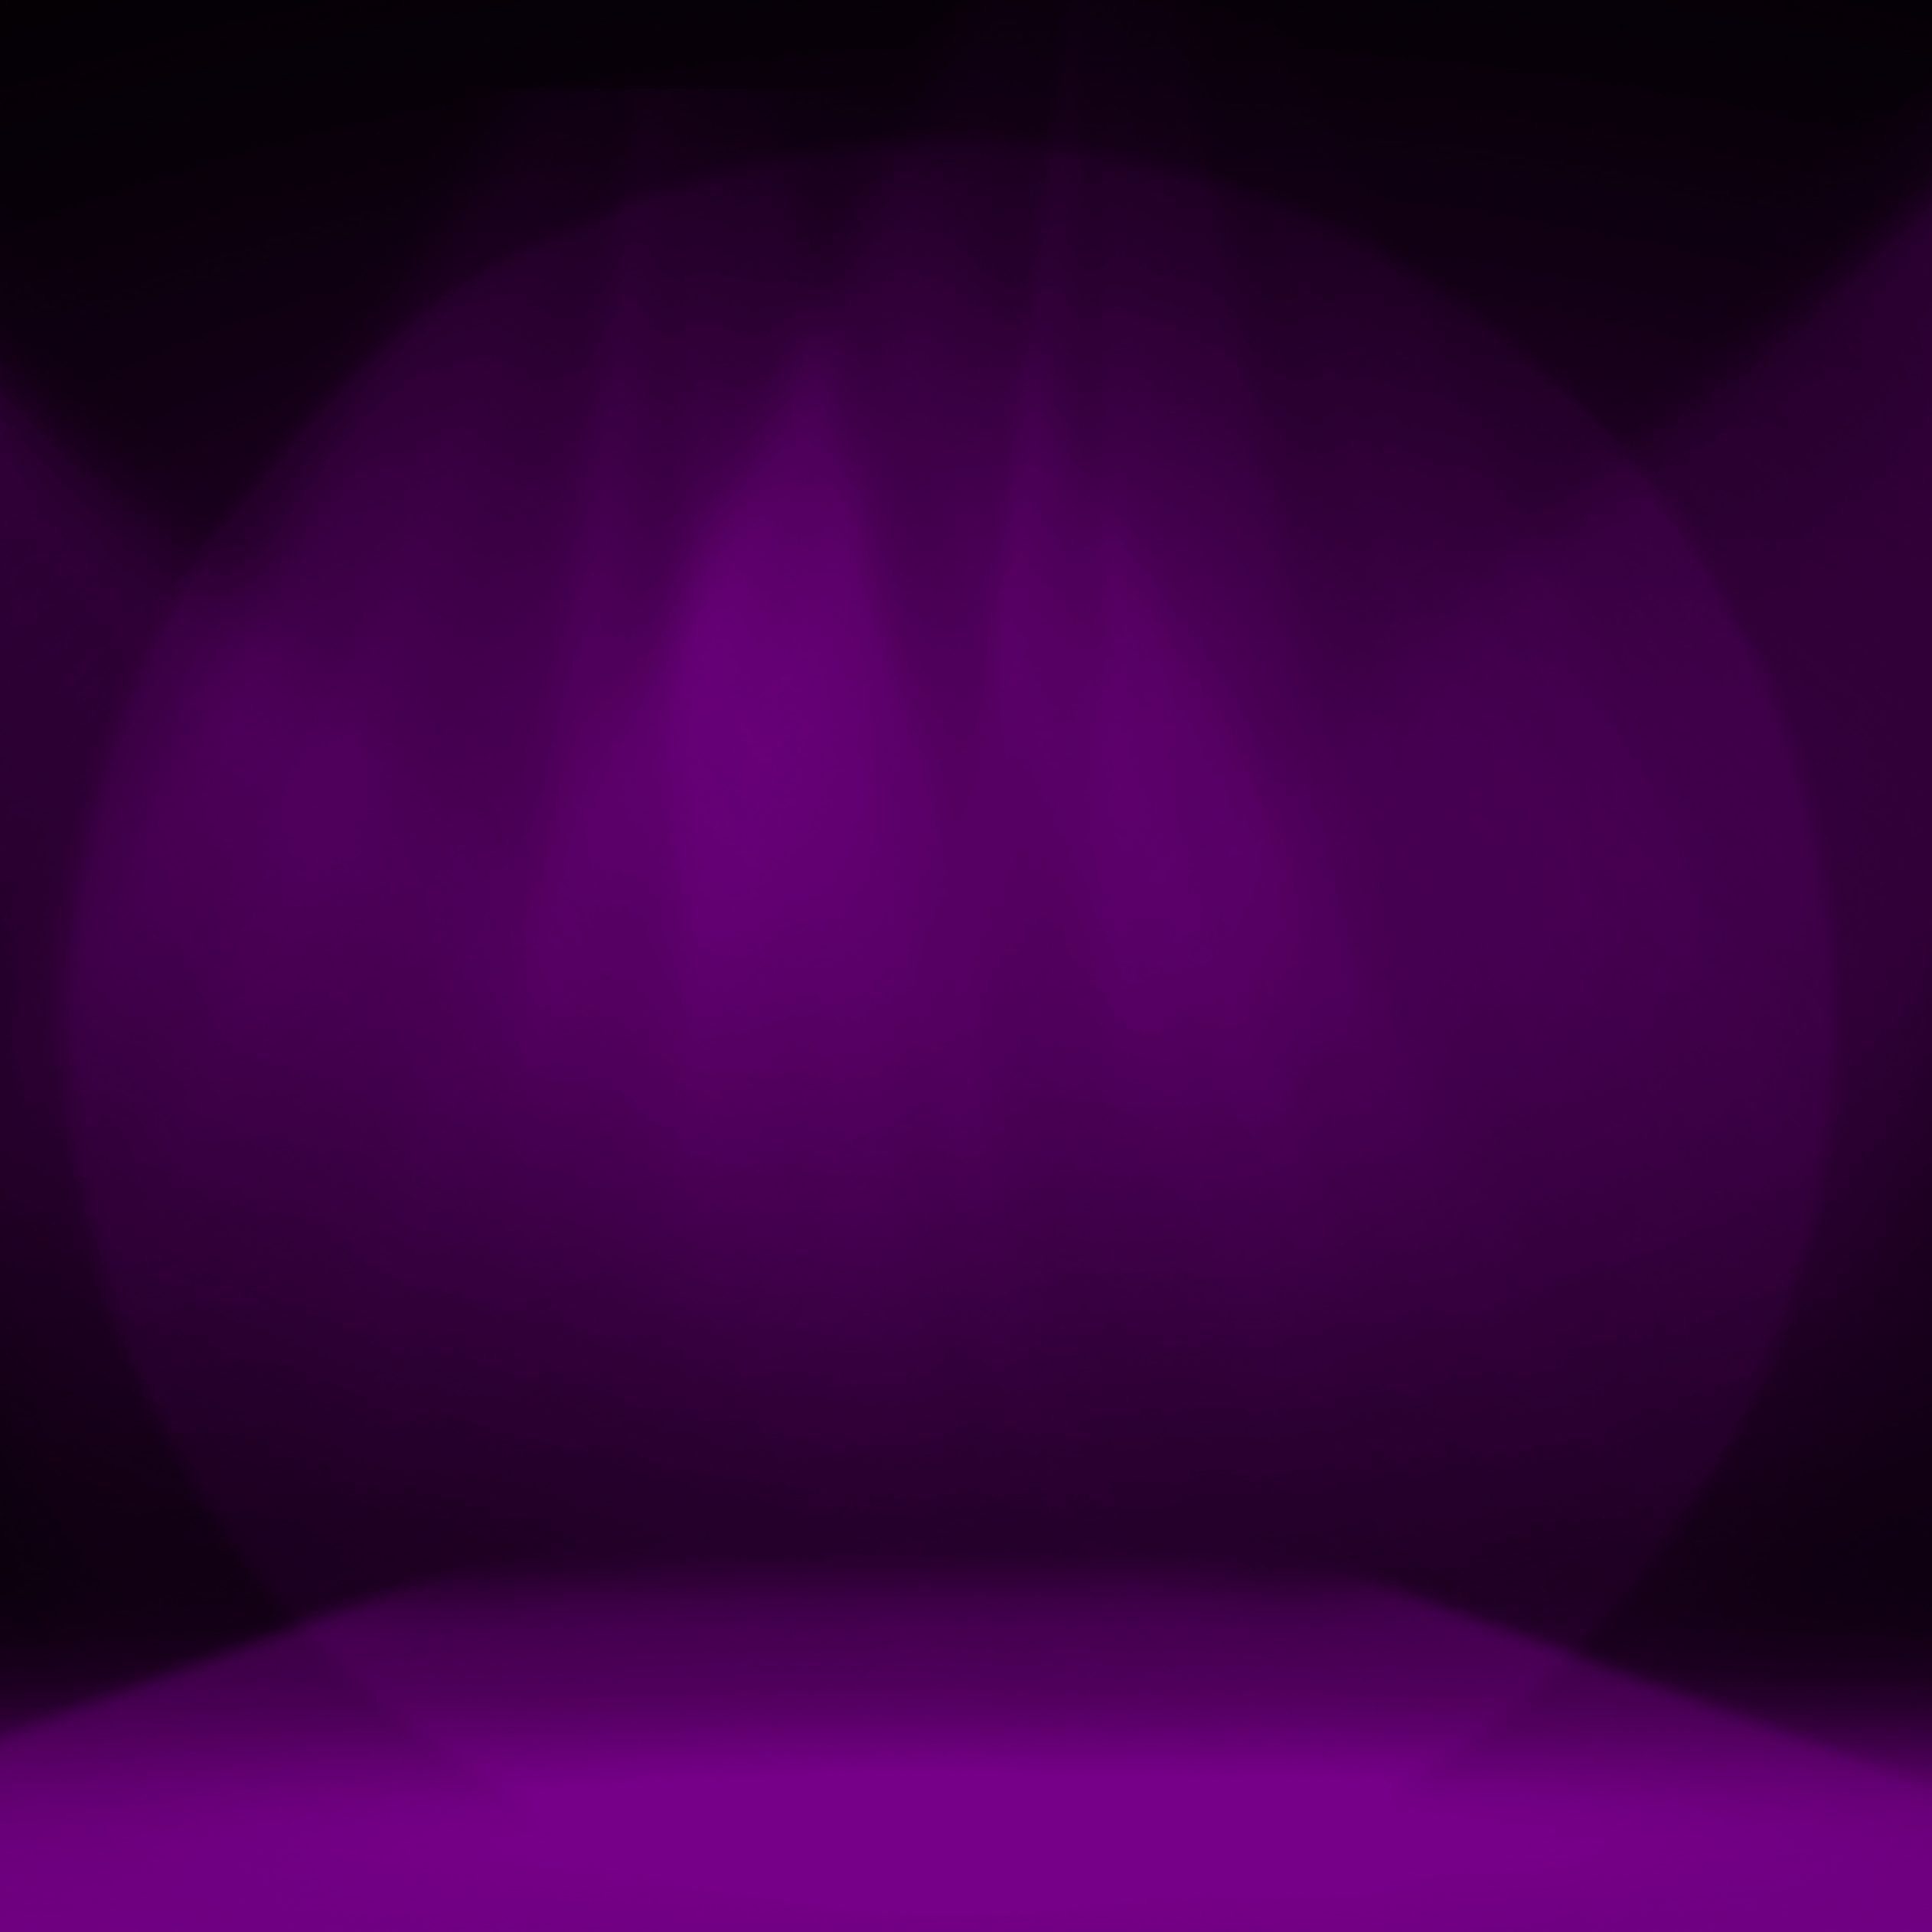 2524x2524 Parallax wallpaper 4k Purple Stage Decoration iPad Wallpaper 2524x2524 pixels resolution